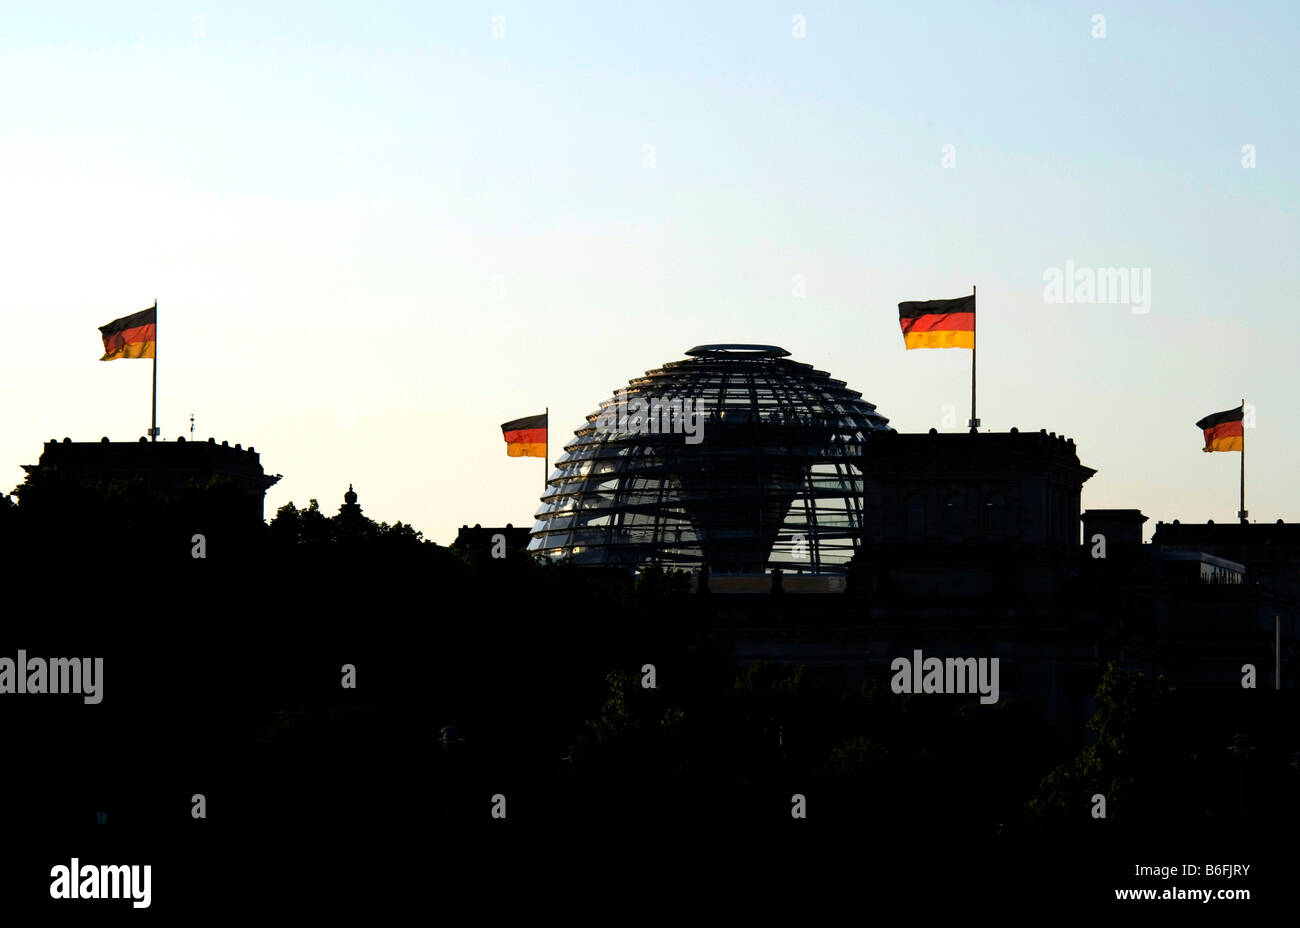 Bâtiment du Reichstag en silhouette avec drapeaux allemands, Berlin, Germany, Europe Banque D'Images